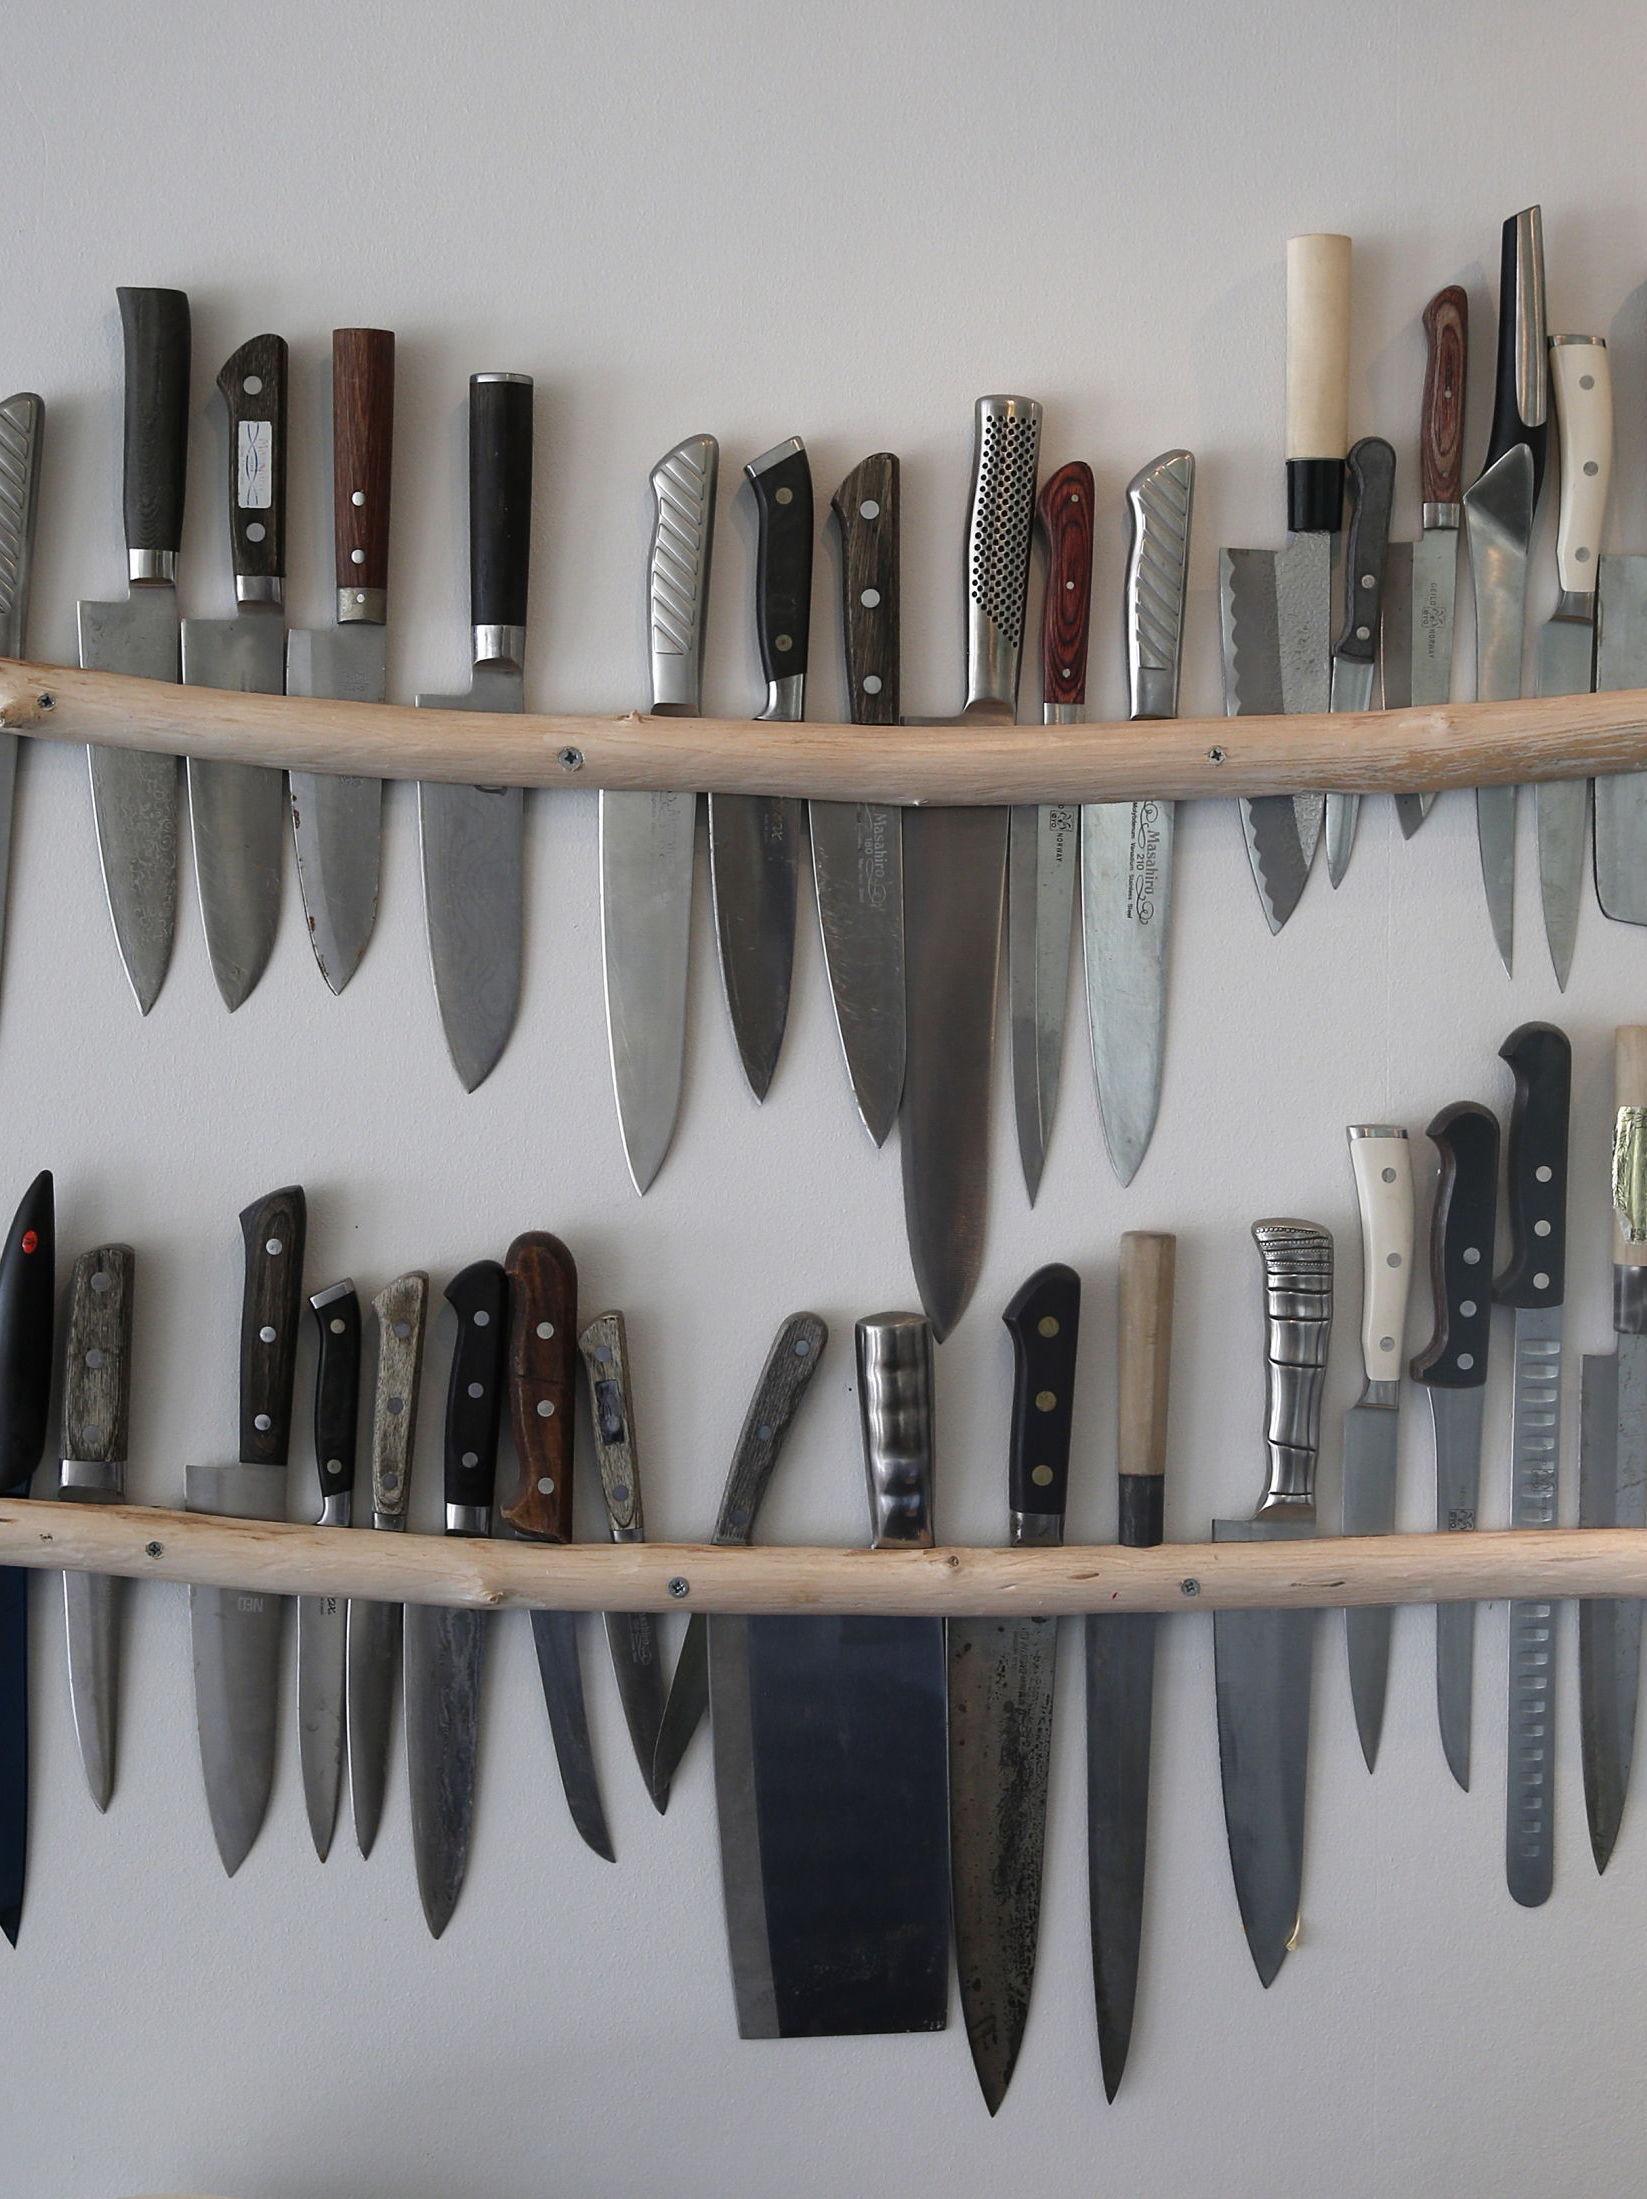 SAMLING: - Dette er alle de pensjonerte knivene mine. Favorittene har jeg med på jobb, forteller Gausdal om knivsamlingen som henger over kjøkkenbenken. Foto: Trond Solberg